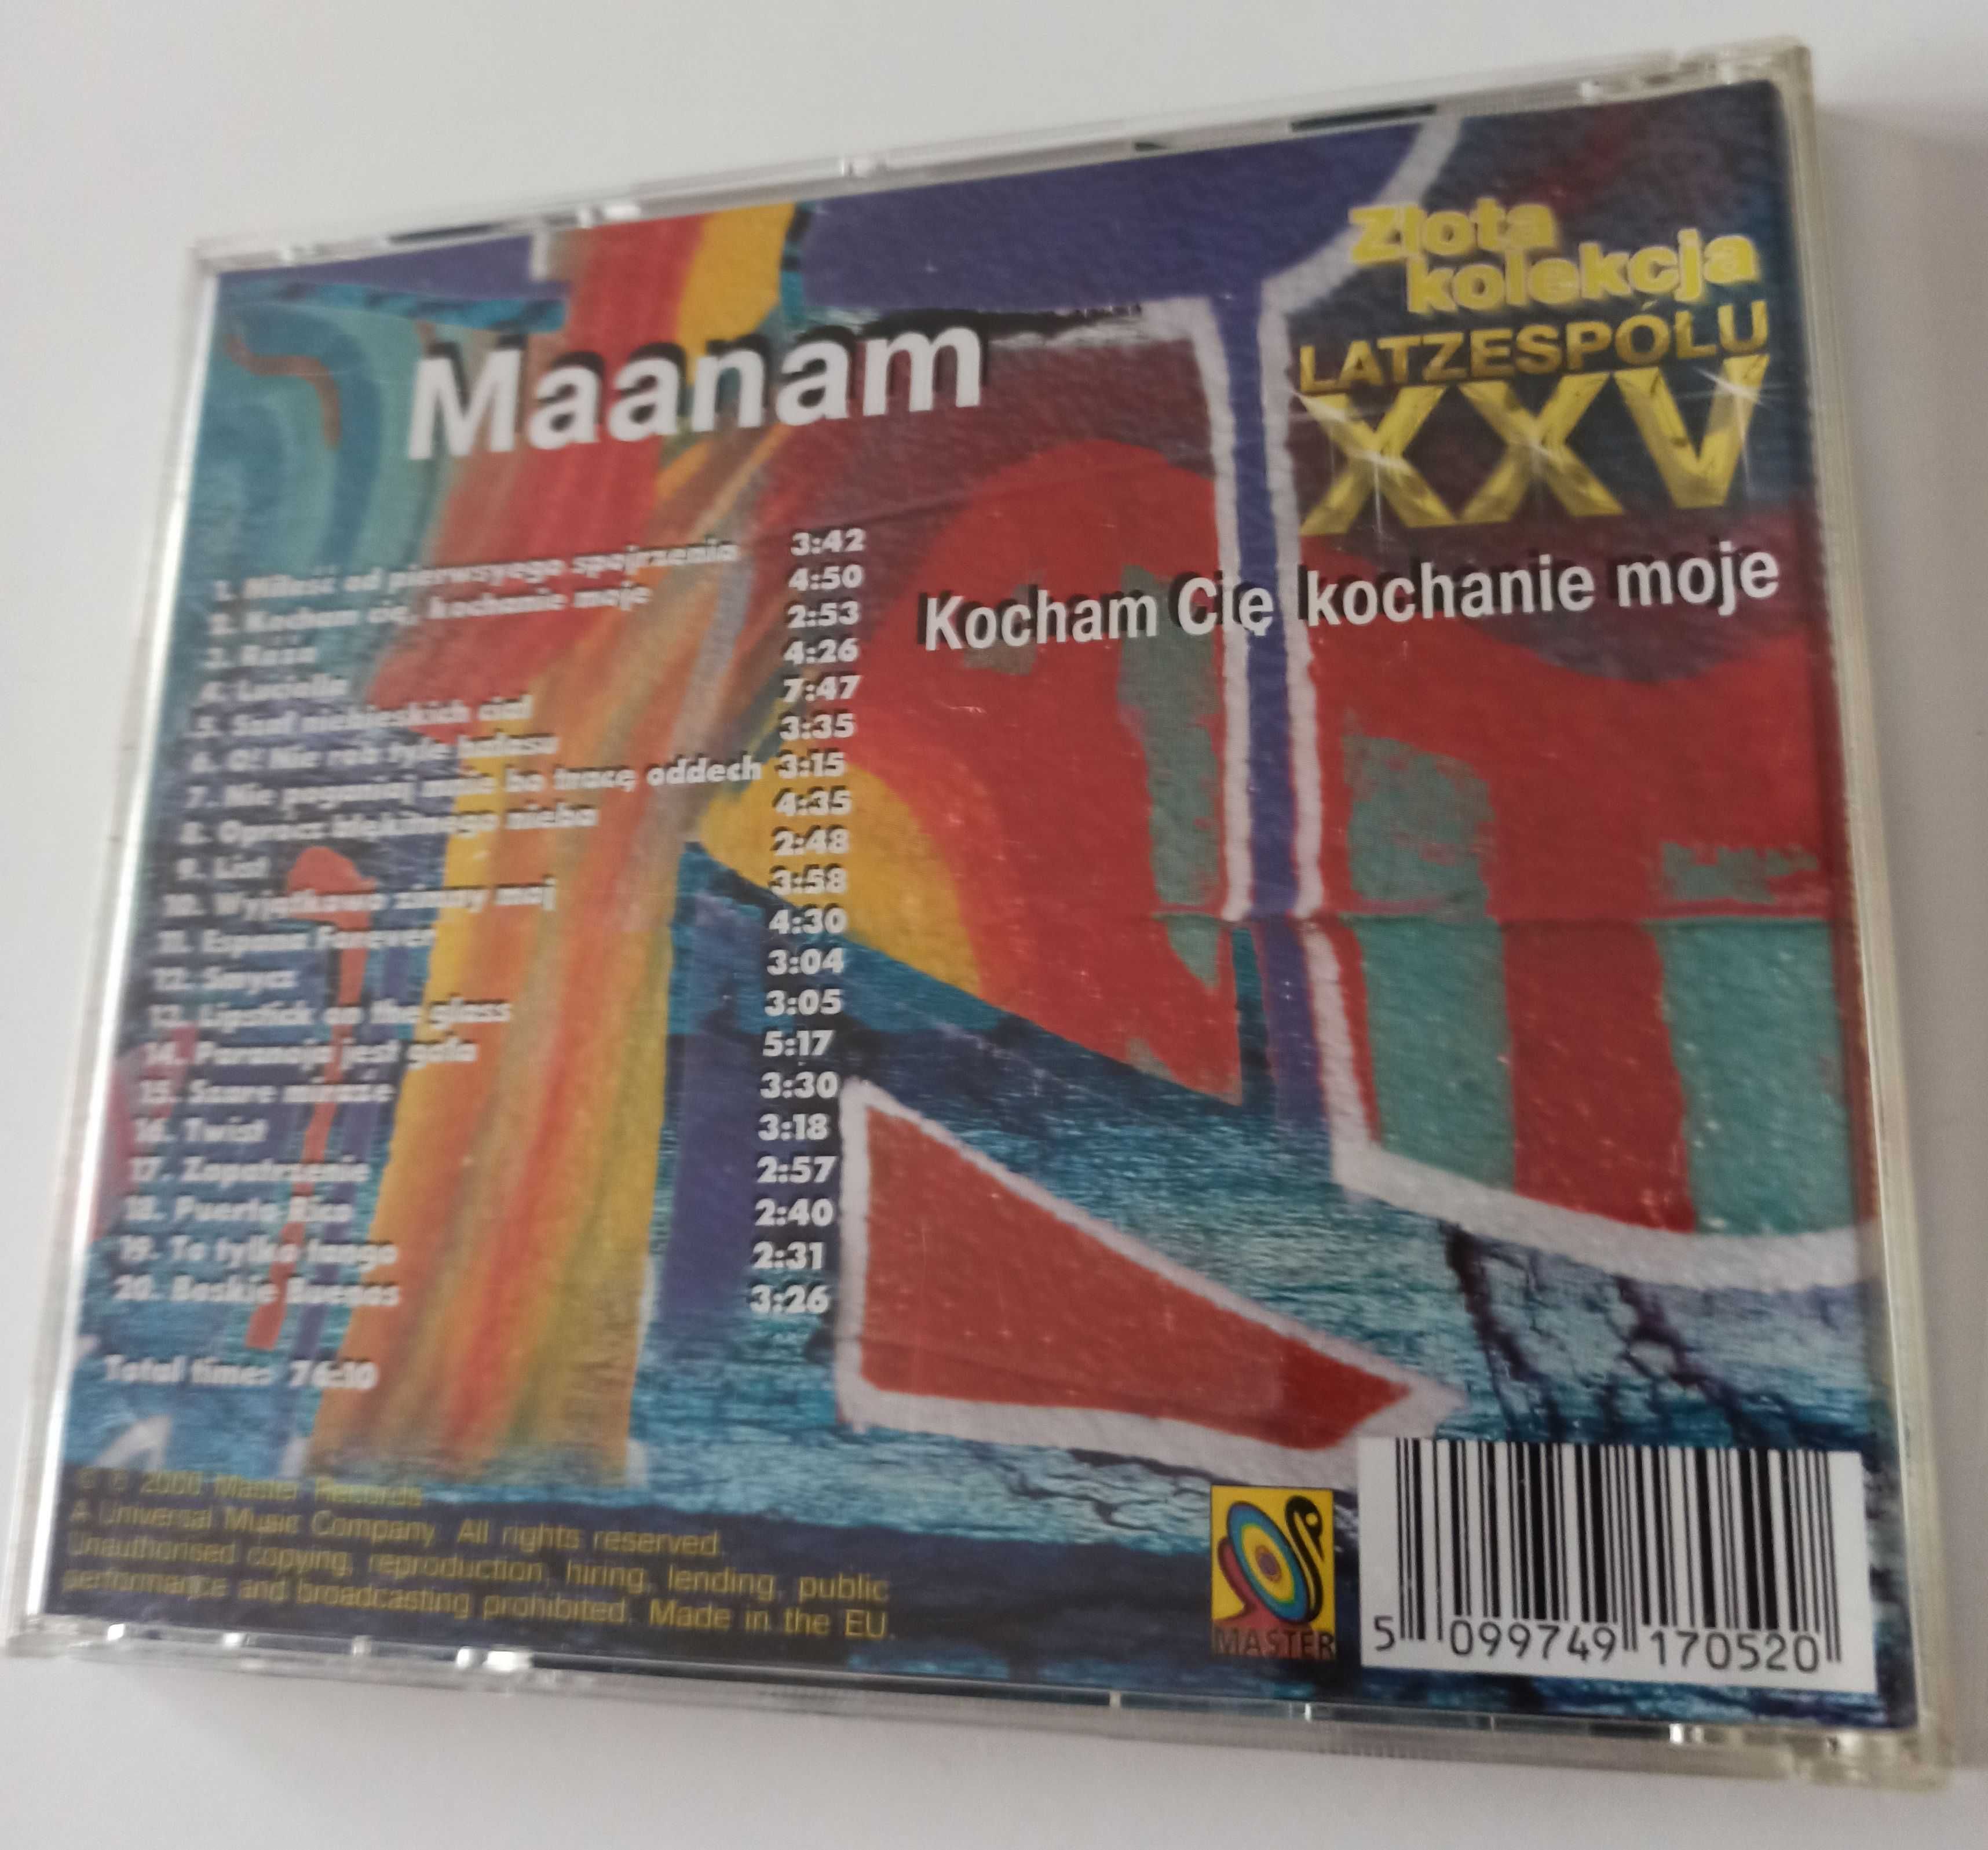 Maanam XXV lat zespołu Kocham cię kochanie moje - płyta CD